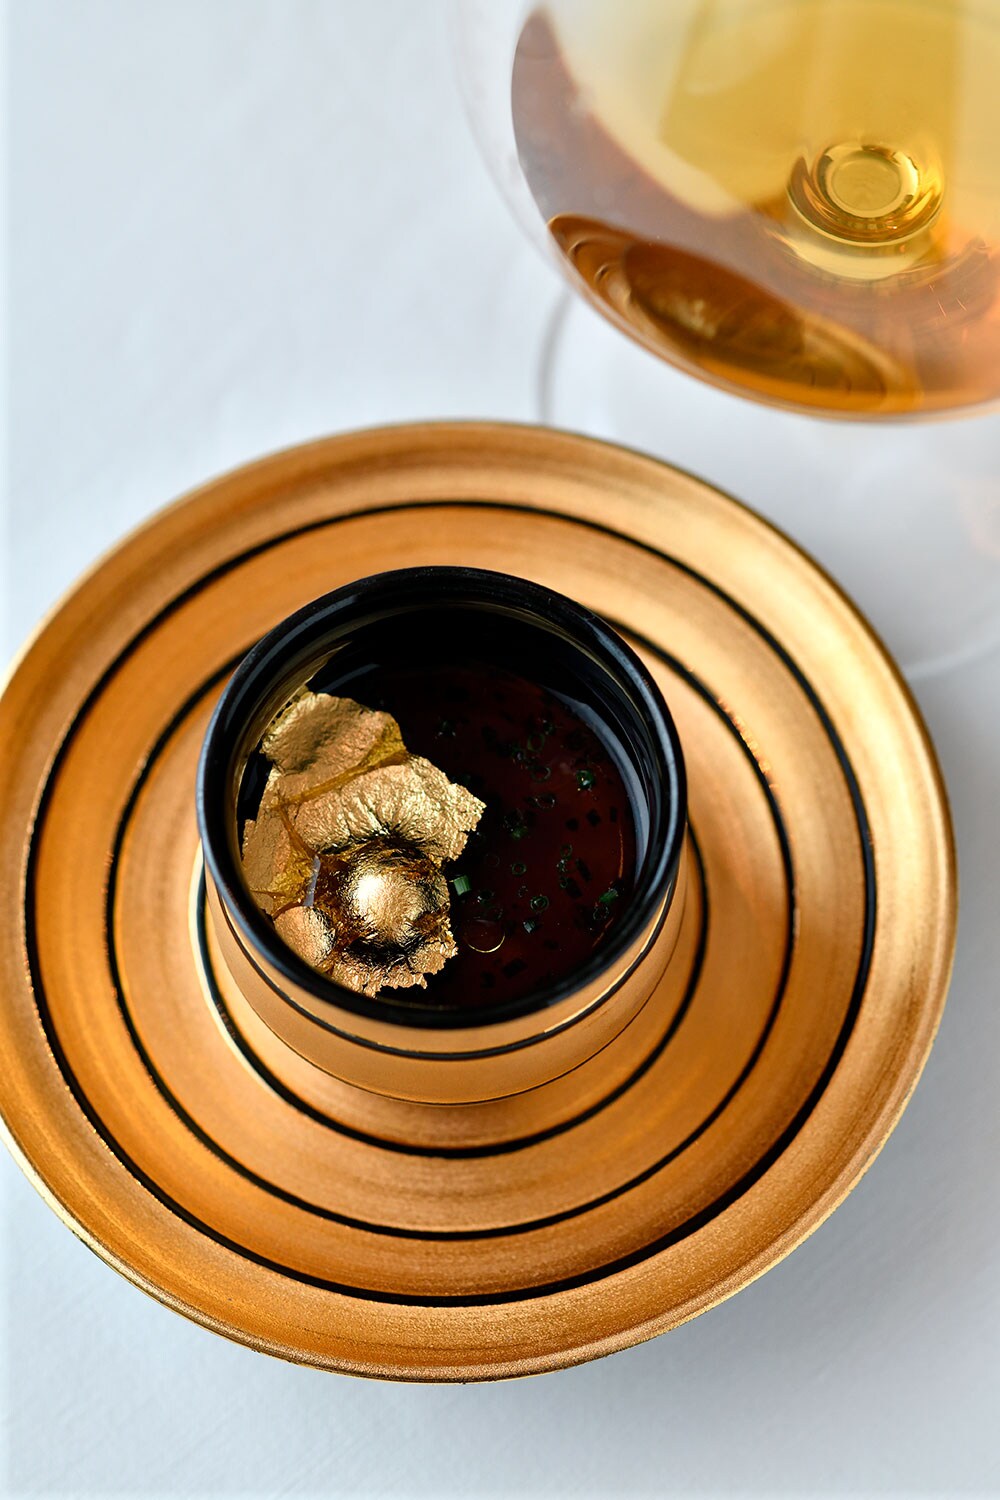 アヒルのレバーと雲南省のキノコを使った山椒風味の茶碗蒸し。